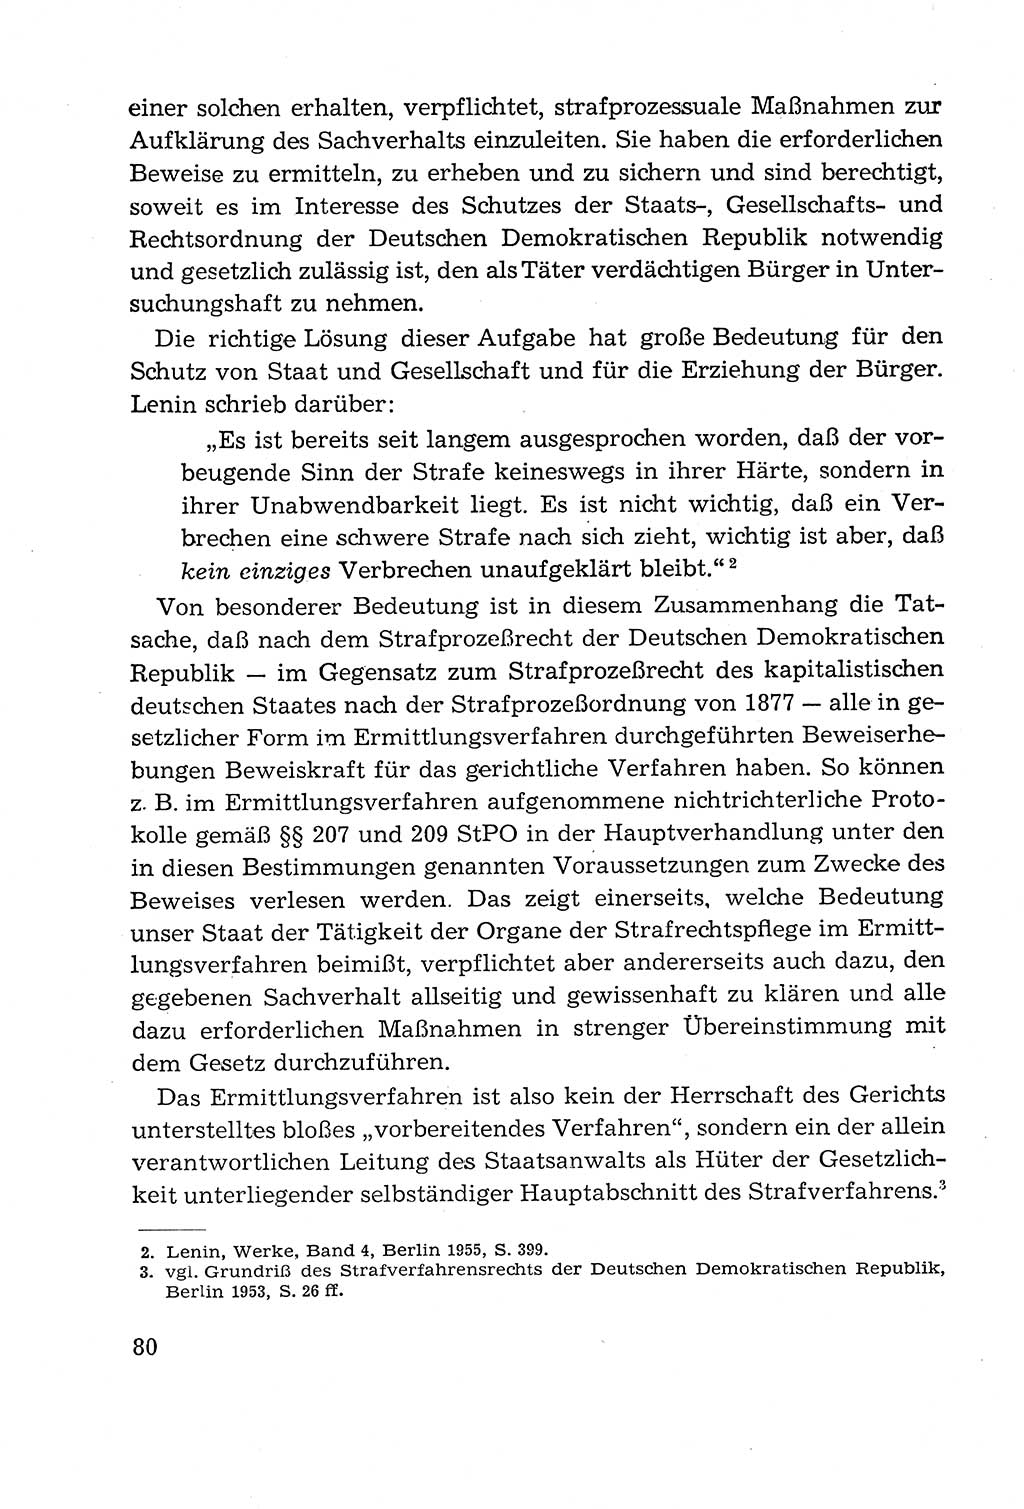 Leitfaden des Strafprozeßrechts der Deutschen Demokratischen Republik (DDR) 1959, Seite 80 (LF StPR DDR 1959, S. 80)